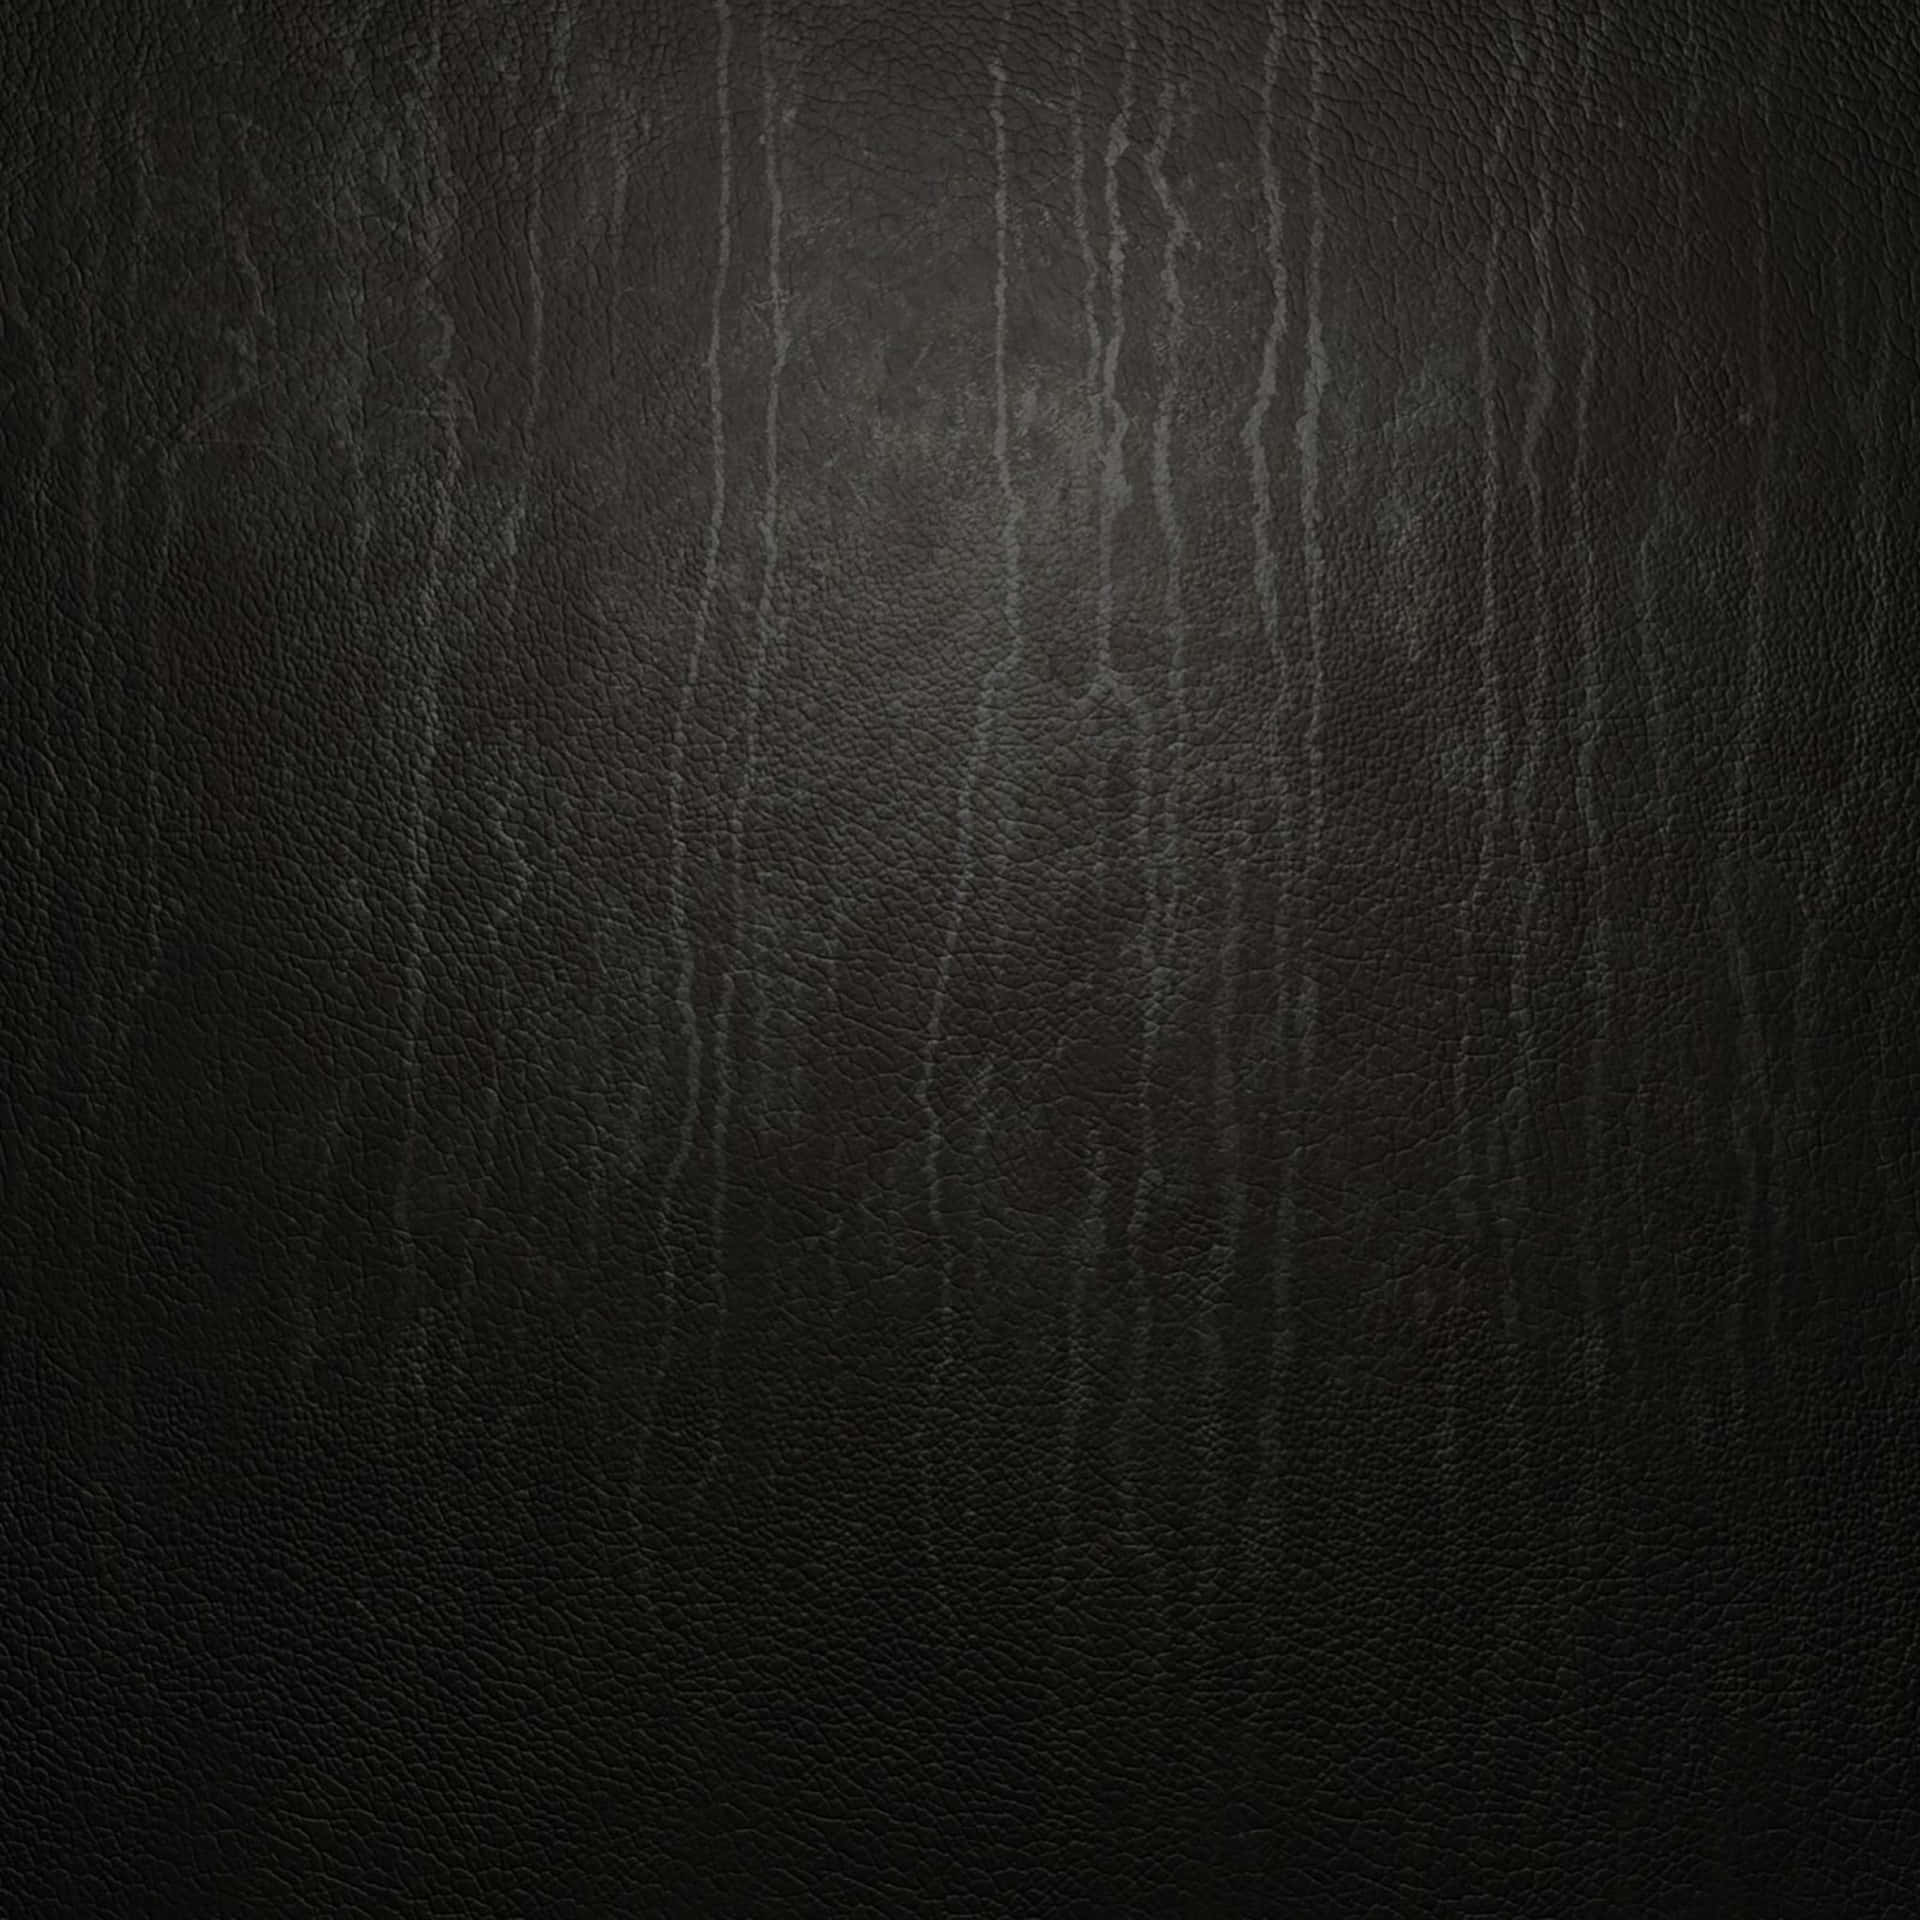 Læder Texture 2048 X 2048 Wallpaper